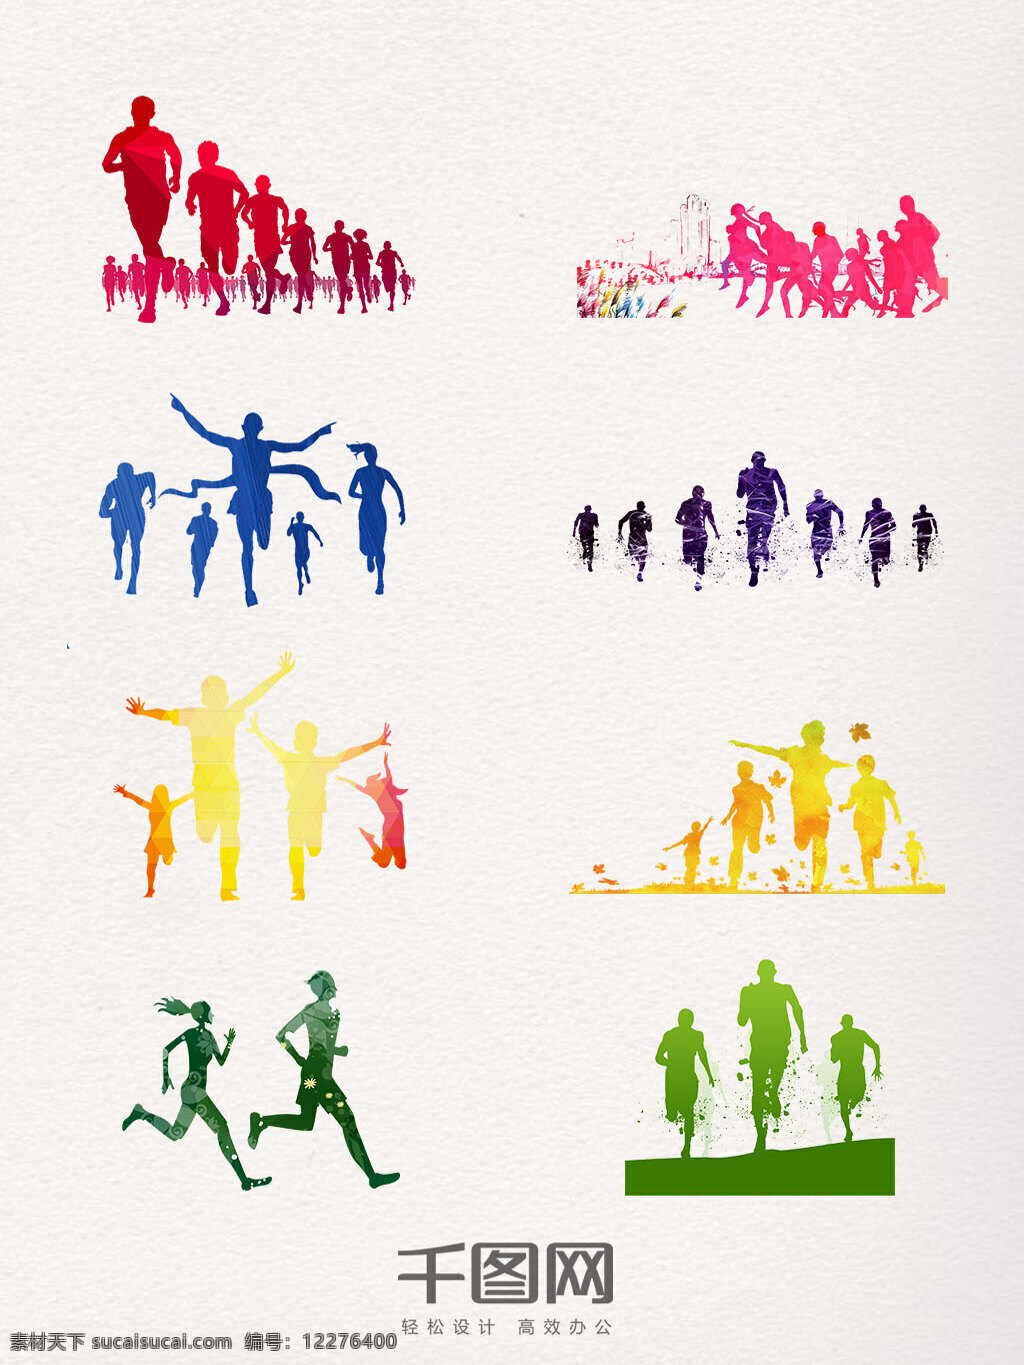 奔跑 人群 装饰 元素 奔跑的人群 运动 跑步 彩色 剪影 奔跑吧 集体 创意